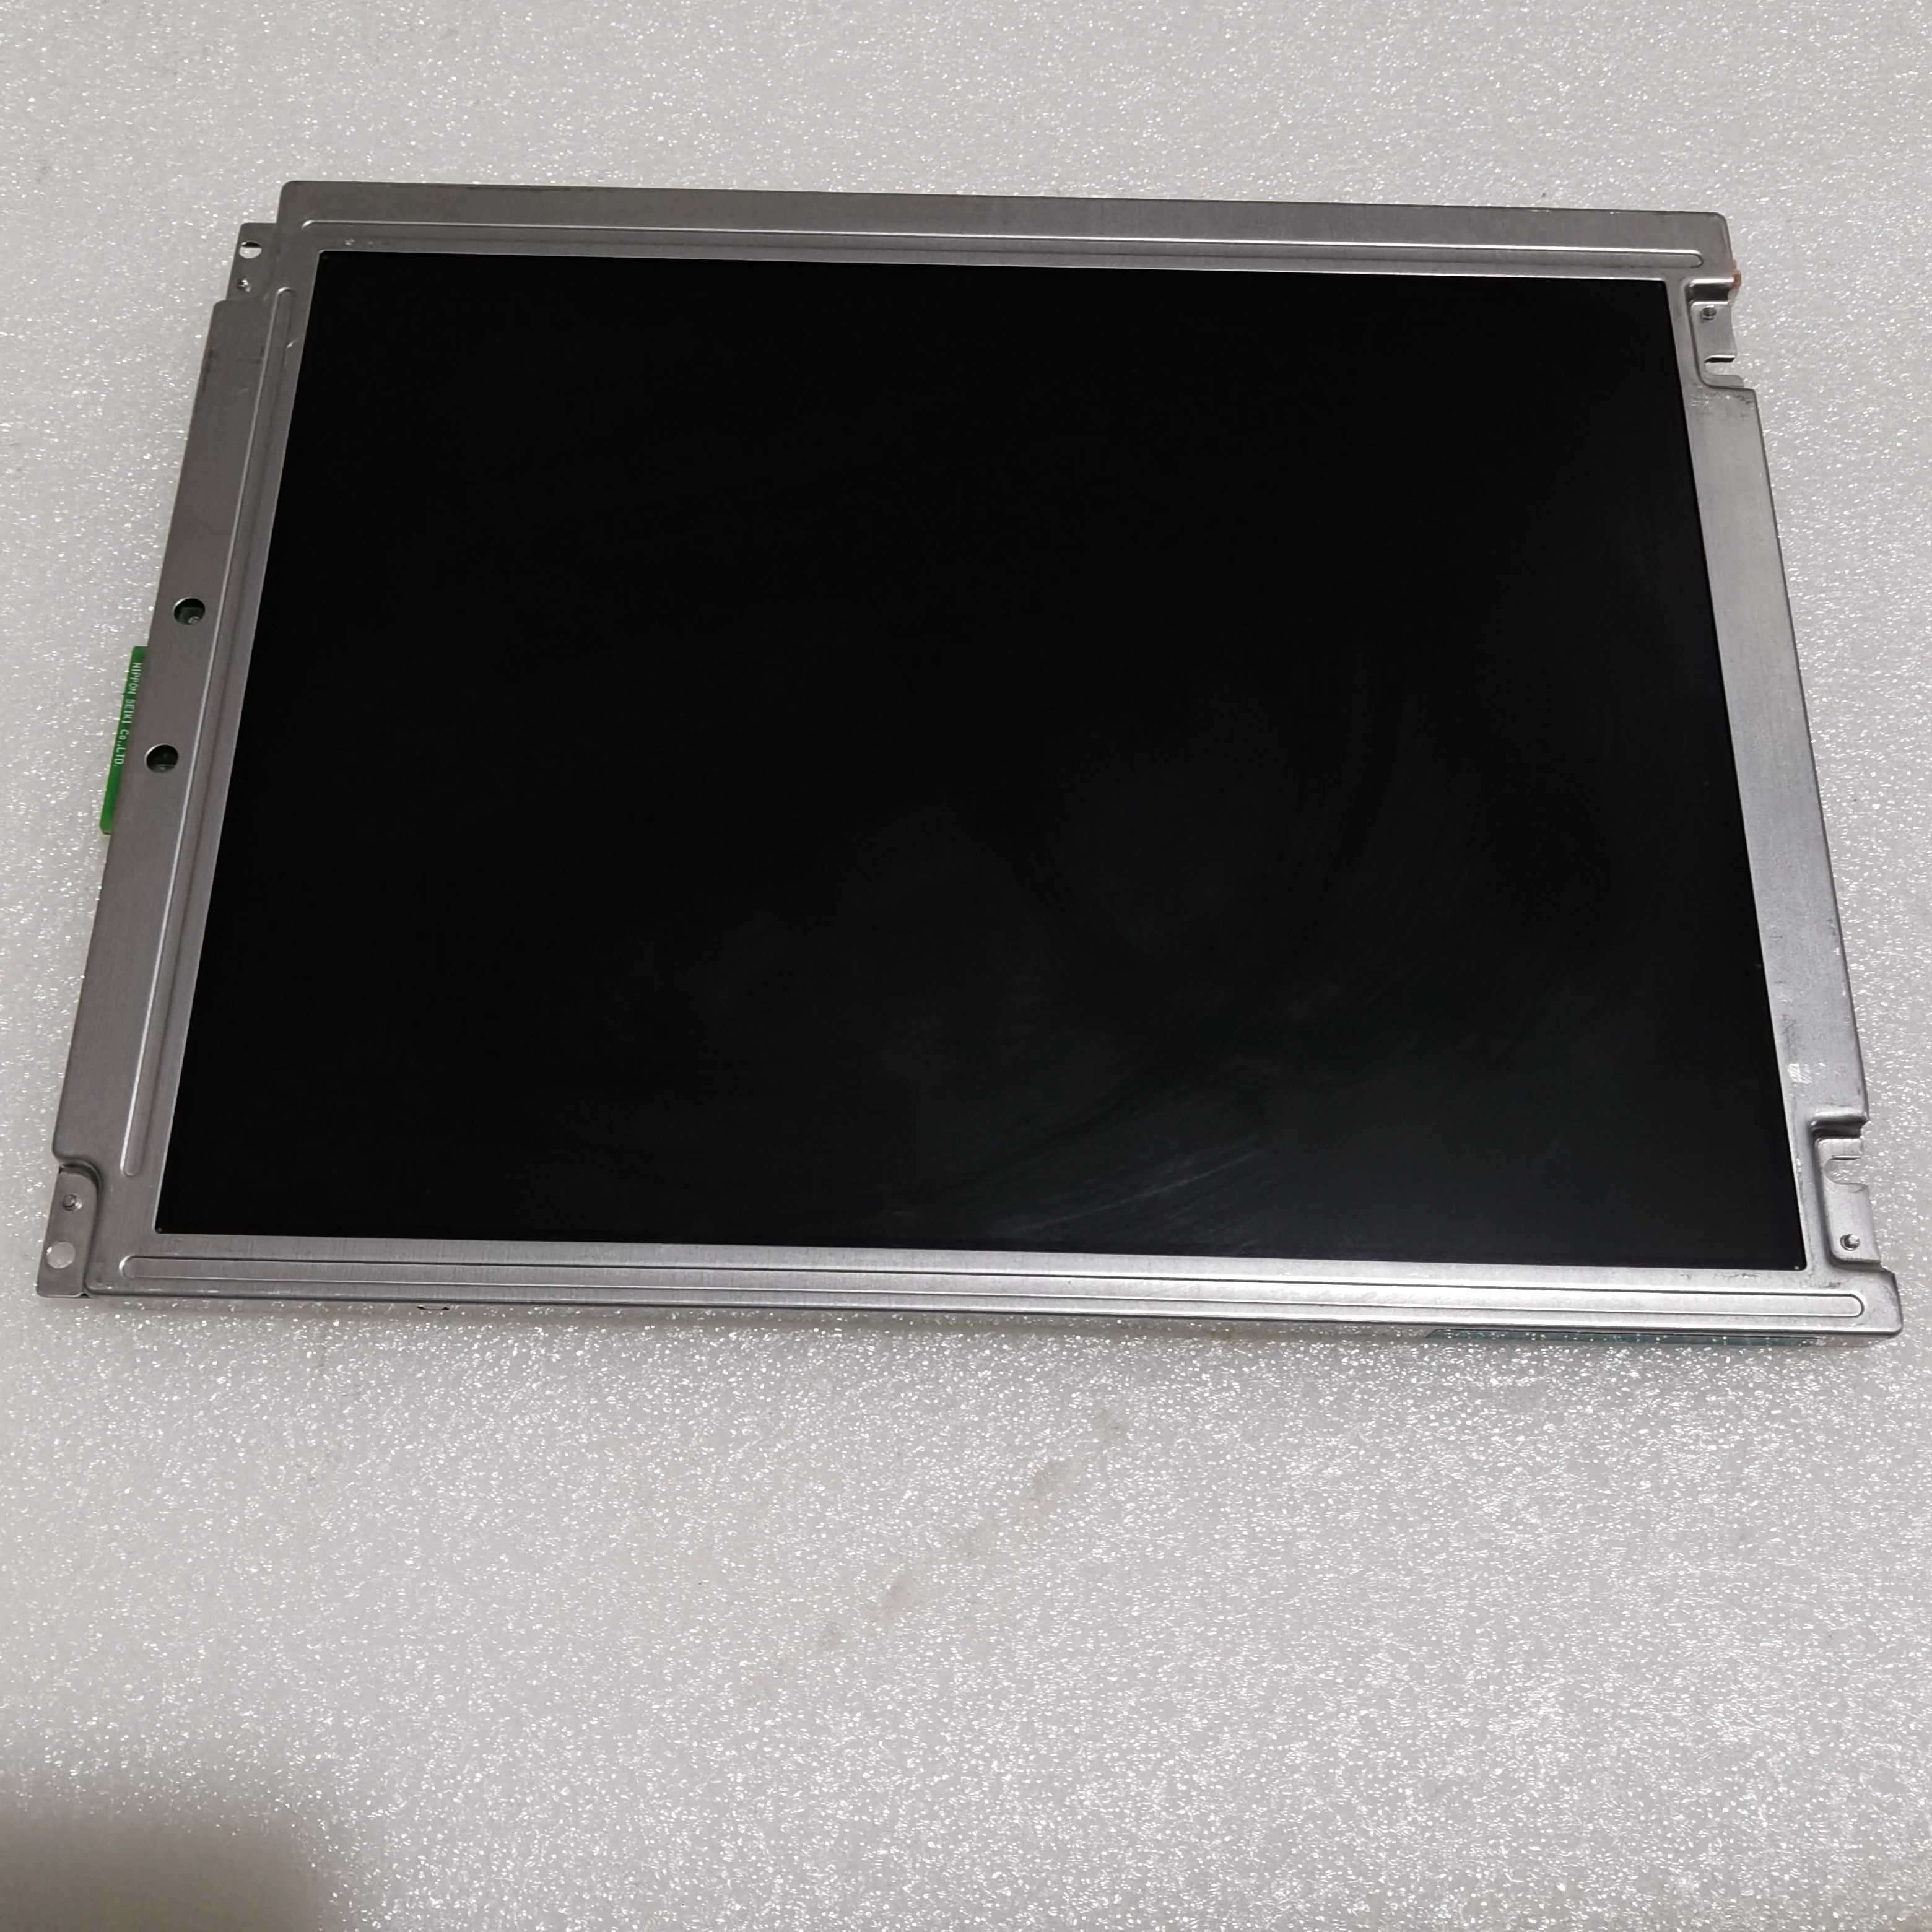 Original 10.4 inch NL8060BC26-17 LCD screen display Panel